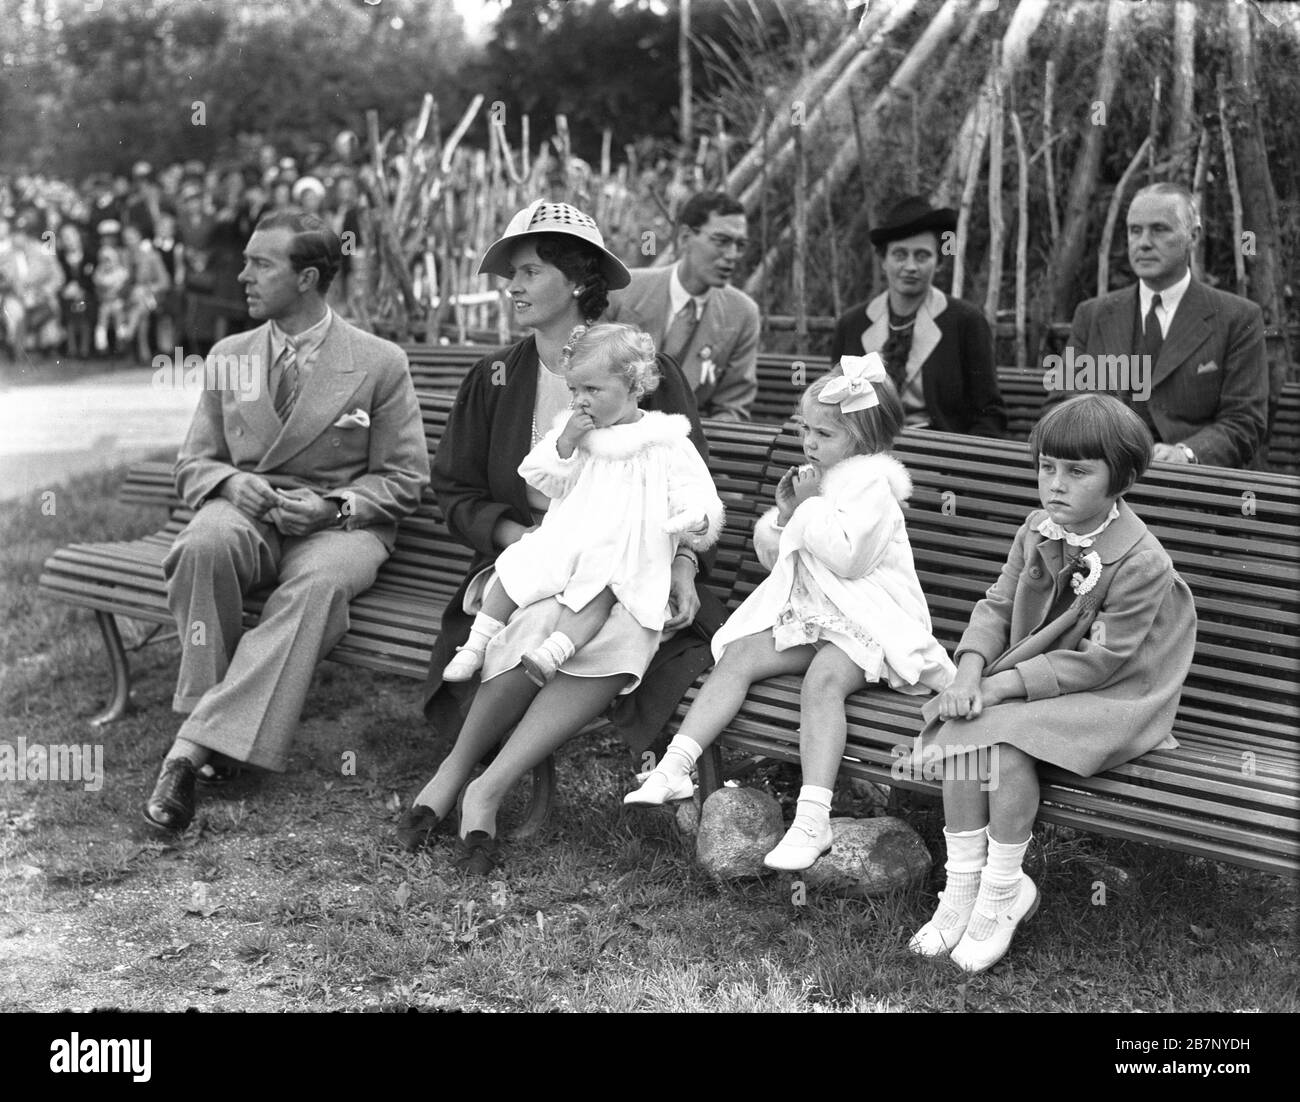 Le Prince Gustav Adolf, la princesse Sibylla, les Princesses Margaretha et Birgitta et une jeune fille inconnue lors de la Journée de l'enfant, Stockholm, Suède, 3/9 1938. Banque D'Images